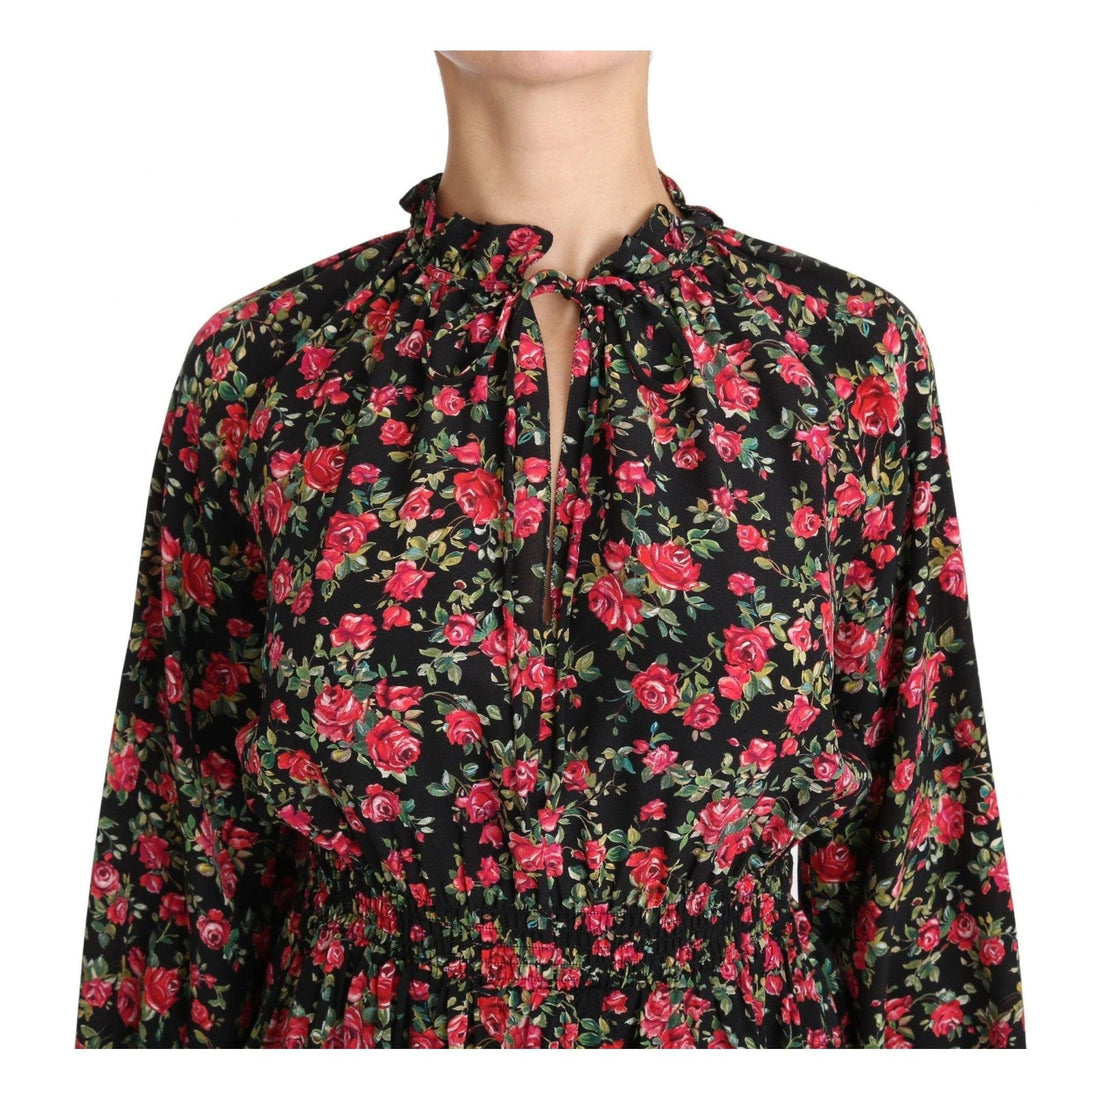 Dolce & Gabbana Black Rose Print Floral Shirt Top Blouse - Paris Deluxe